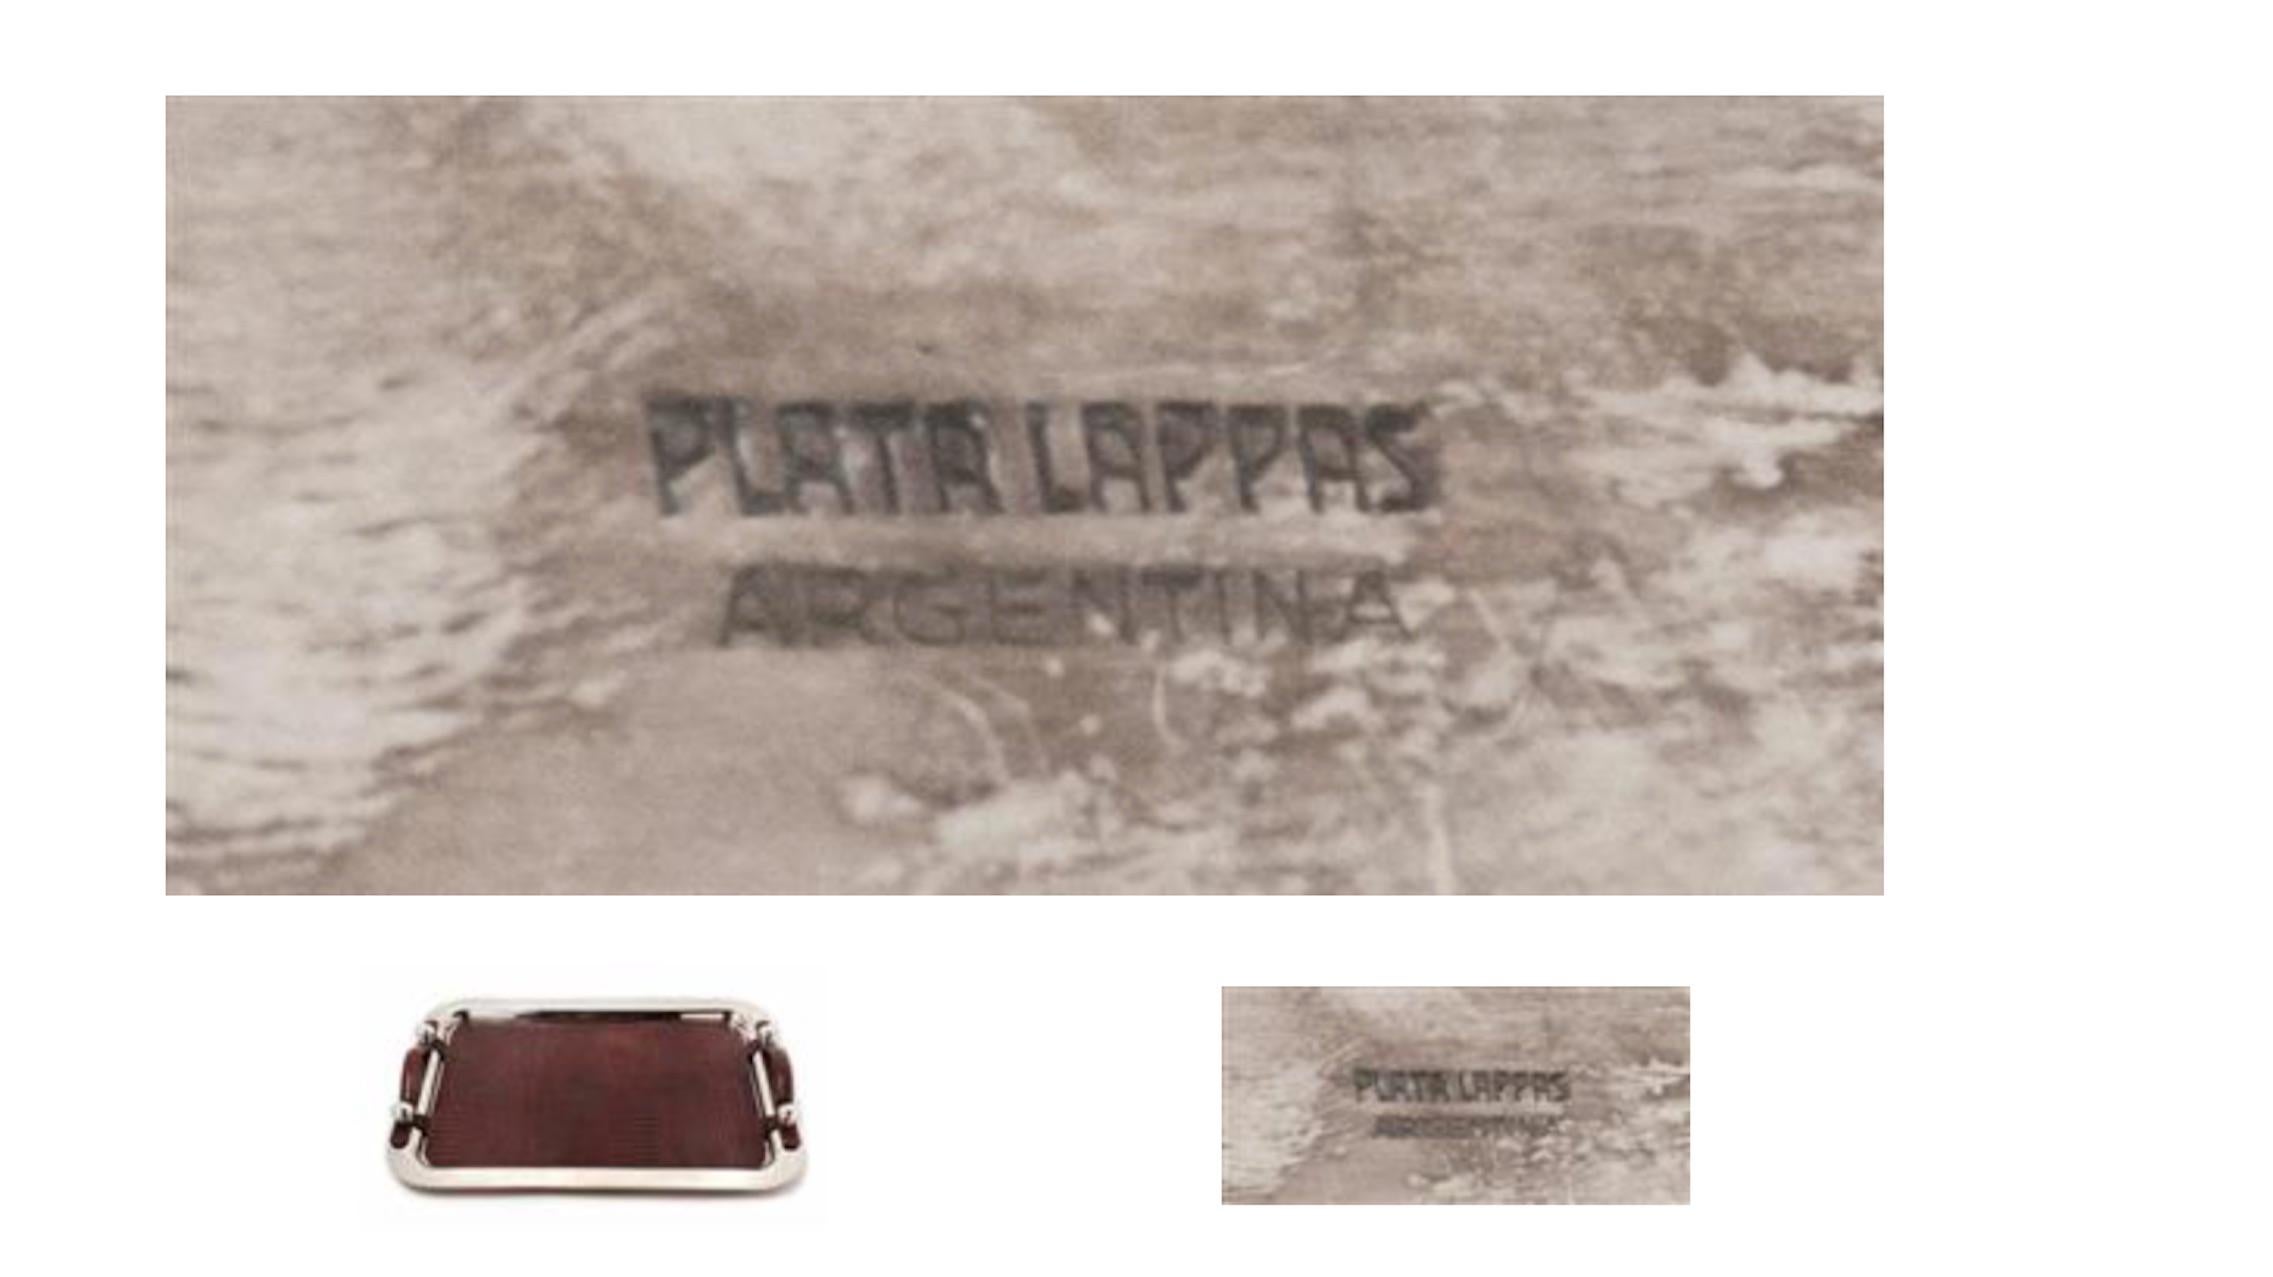 Un plateau de service argenté et cuir argentin 
Plata Lappas, Buenos Aires, 20e siècle 
le plateau avec une finition martelée par points. 
marqué 